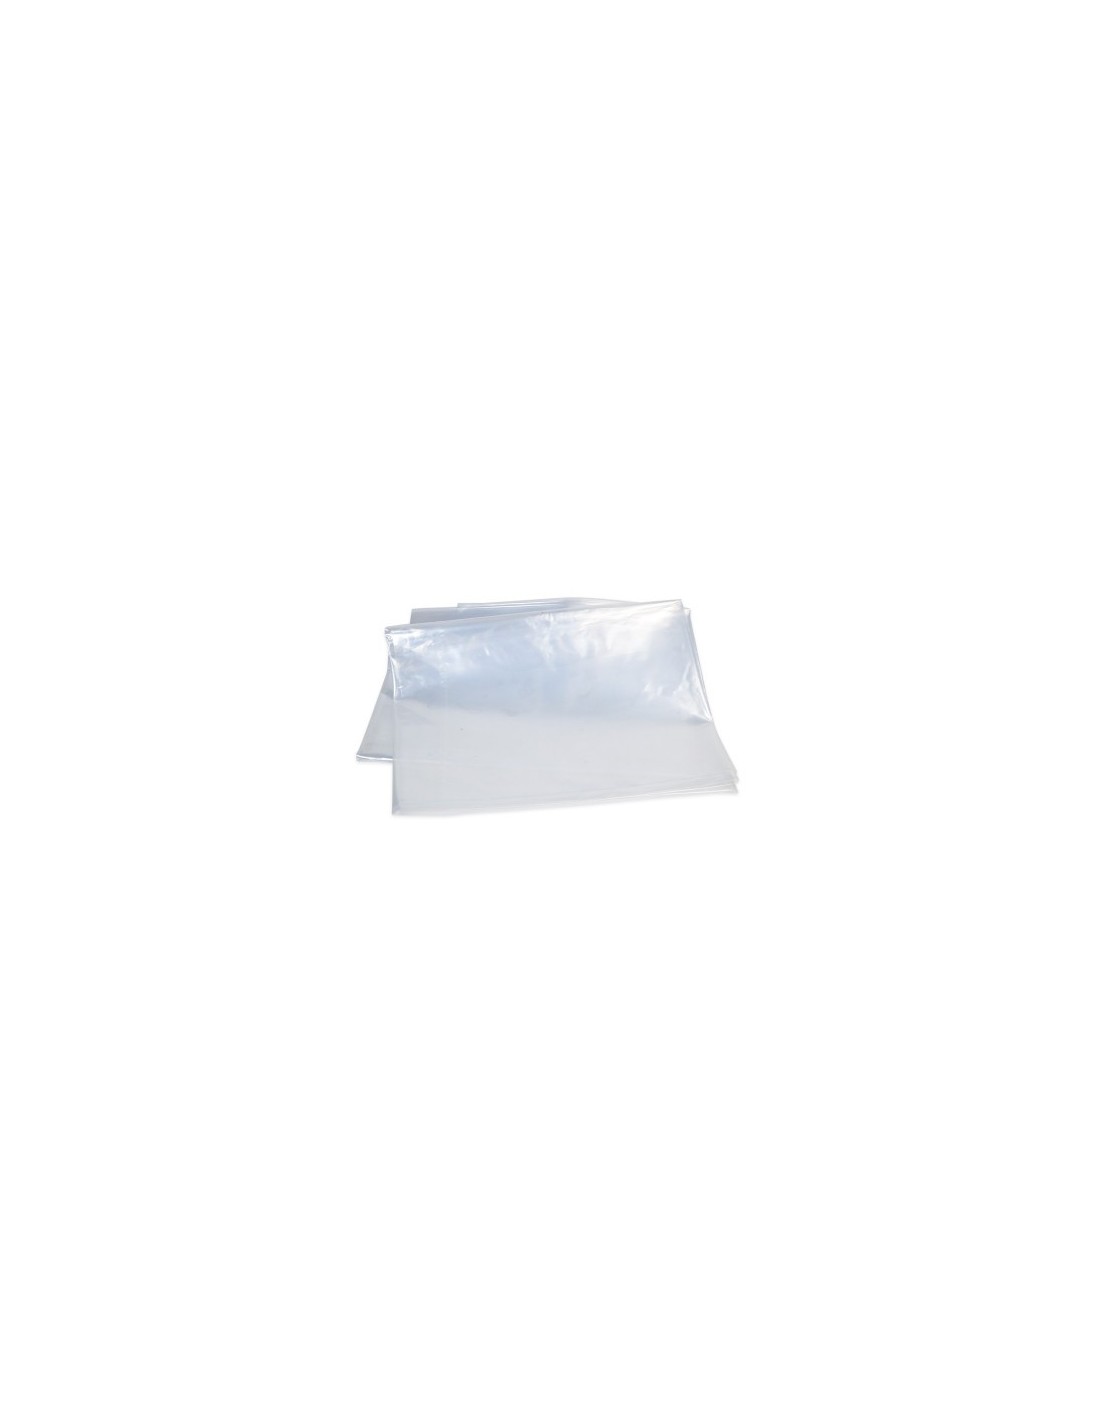 Bolsa plástica transparente en polipropileno 25 x 35 cm